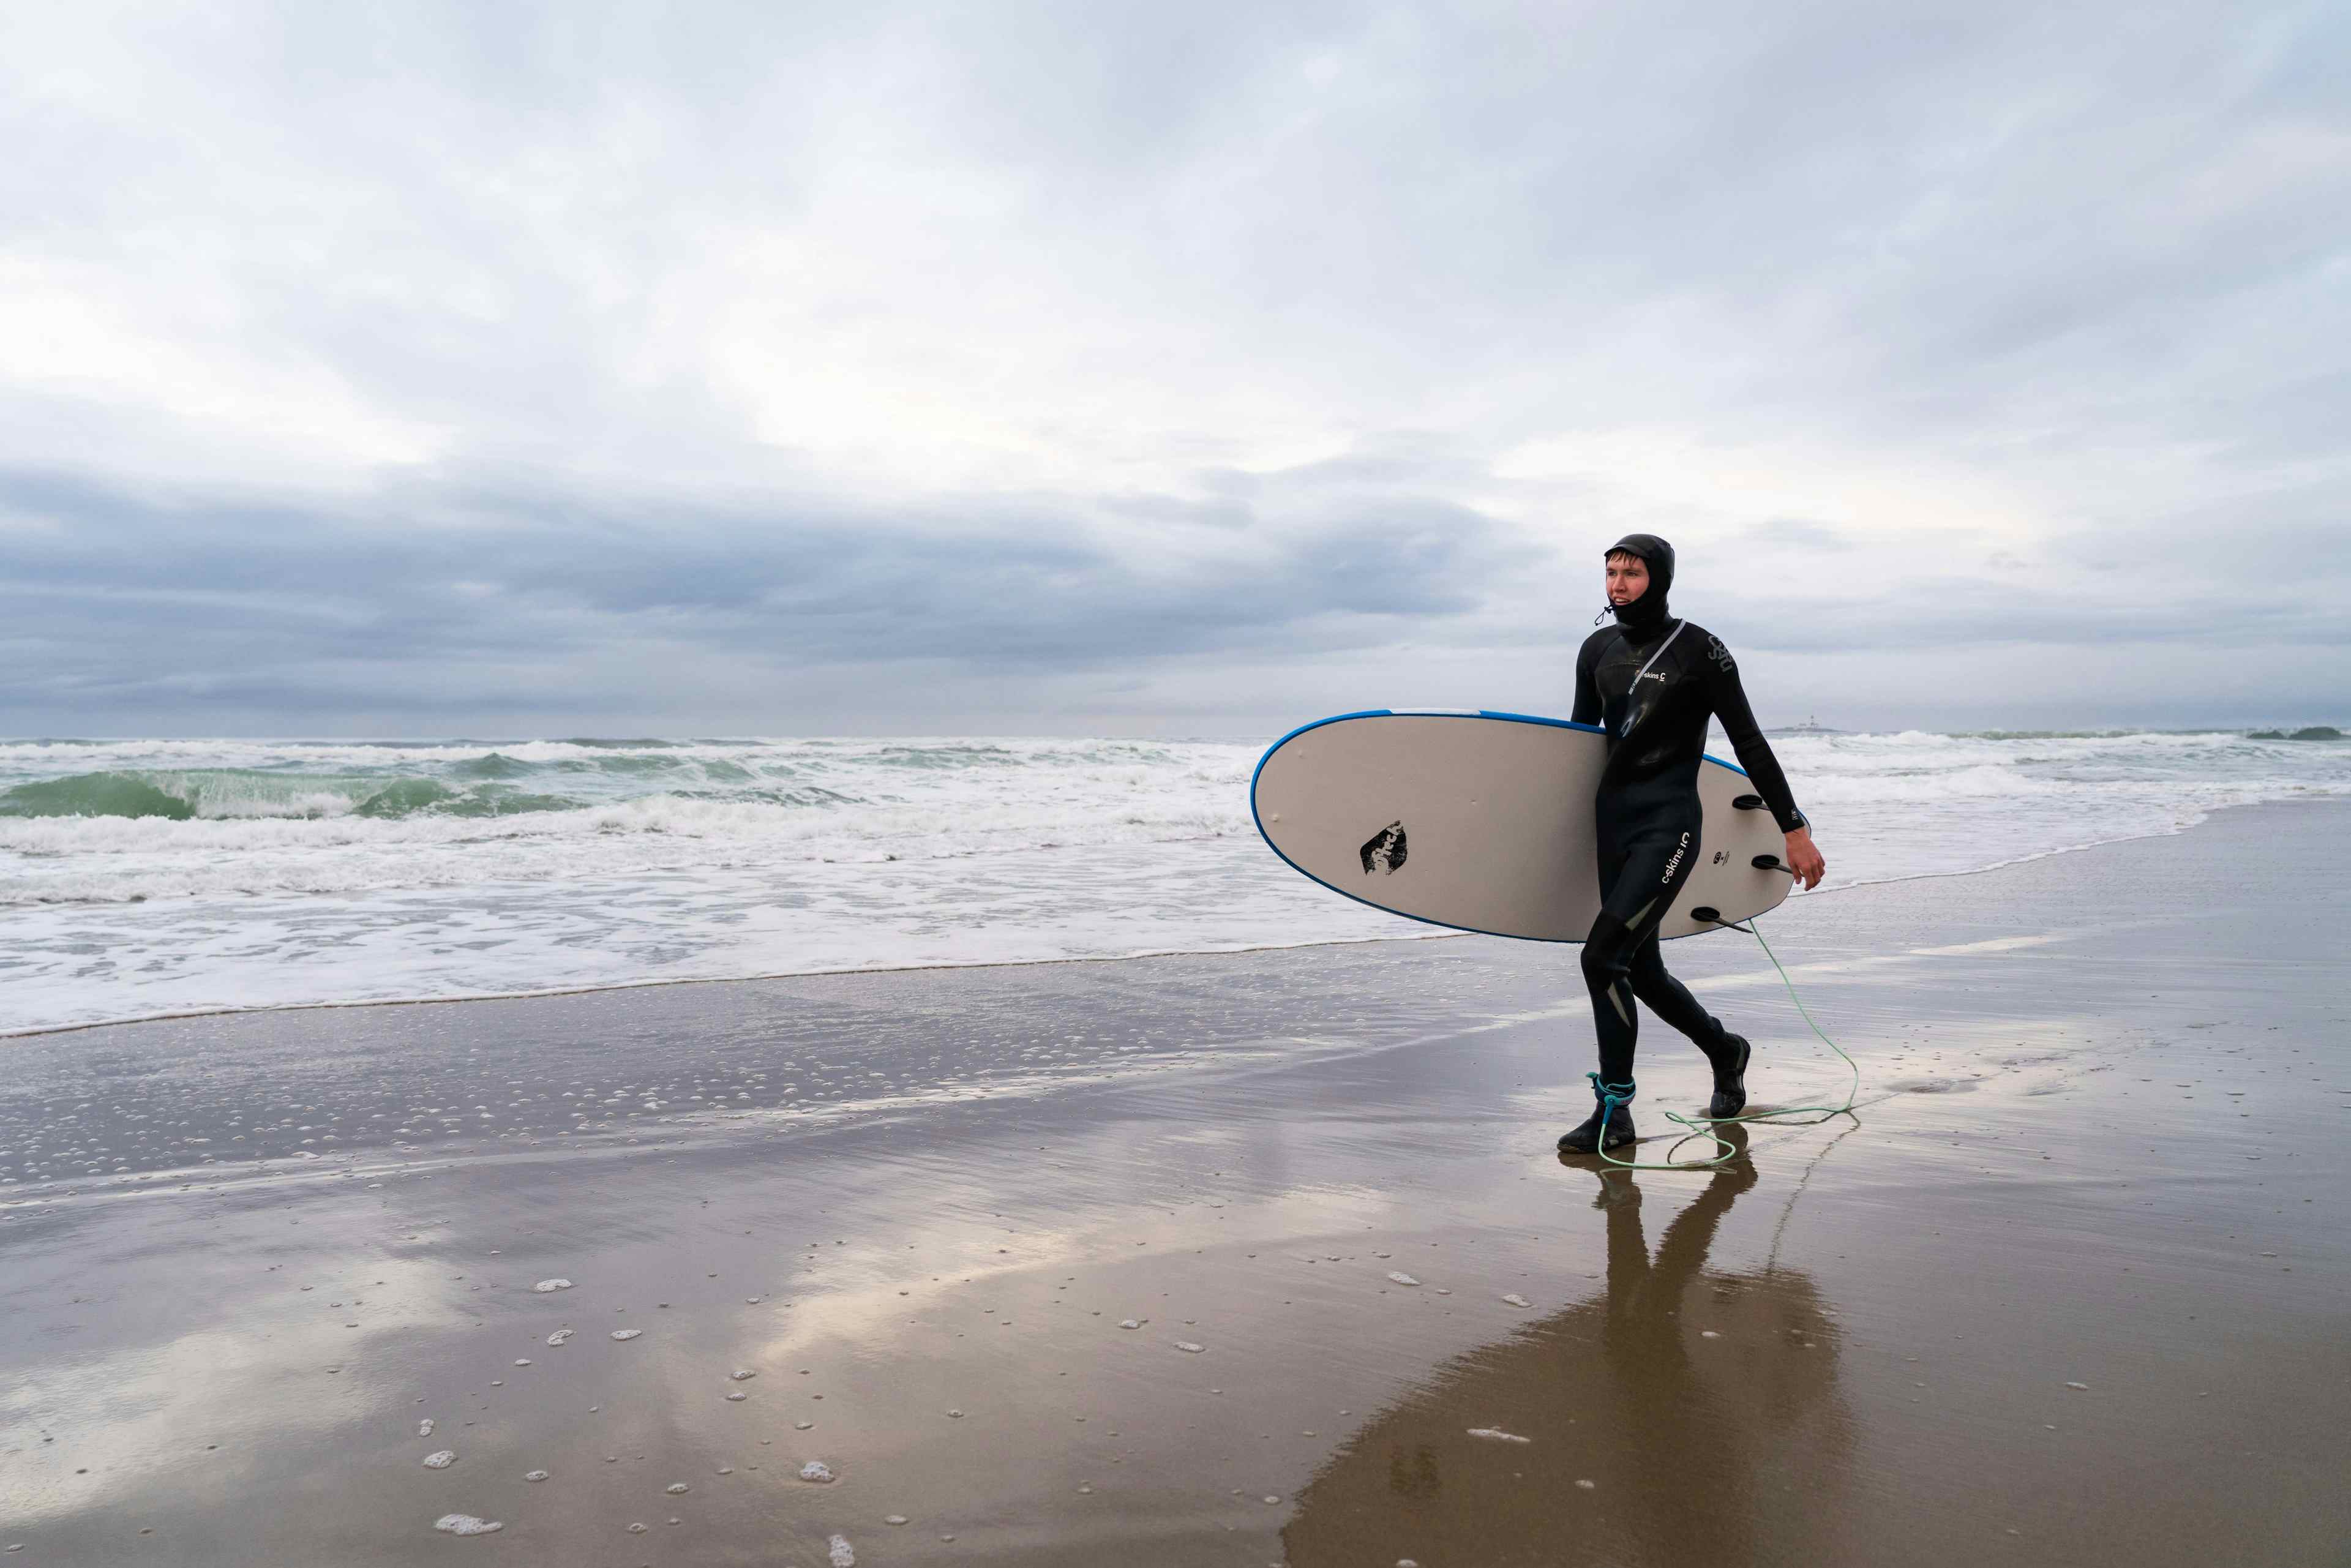 Mann i våtdrakt går langs stranden med surfebrett under armen.